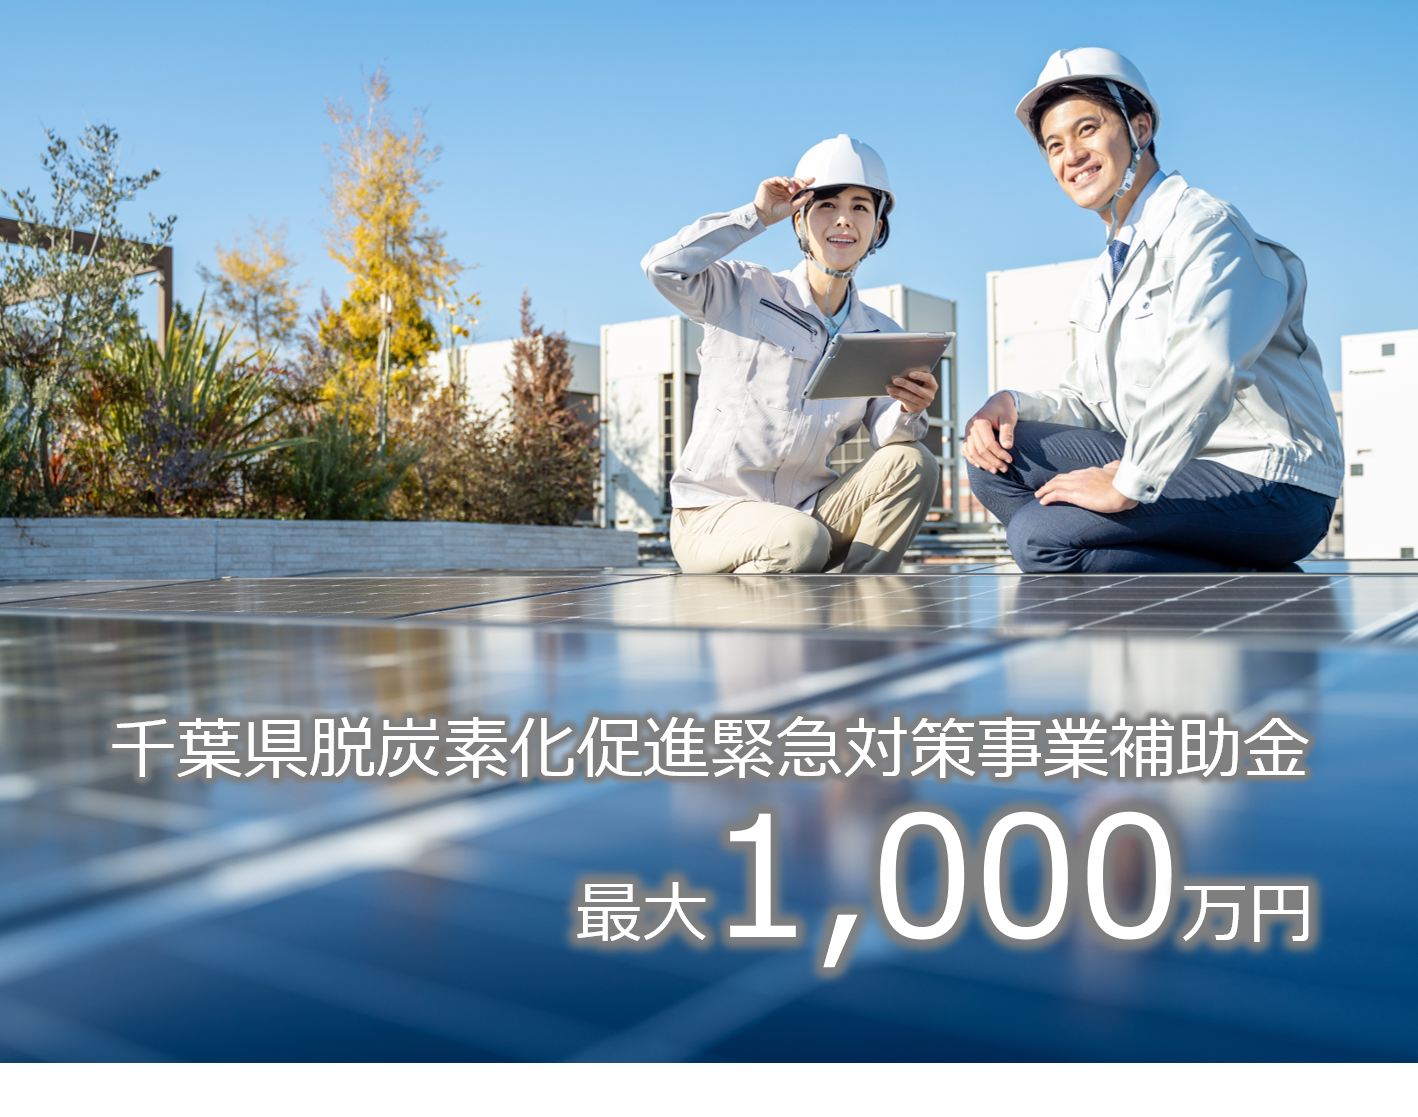 【千葉県補助金】企業の脱炭素化のための節電・停電対策と遮熱・断熱工事